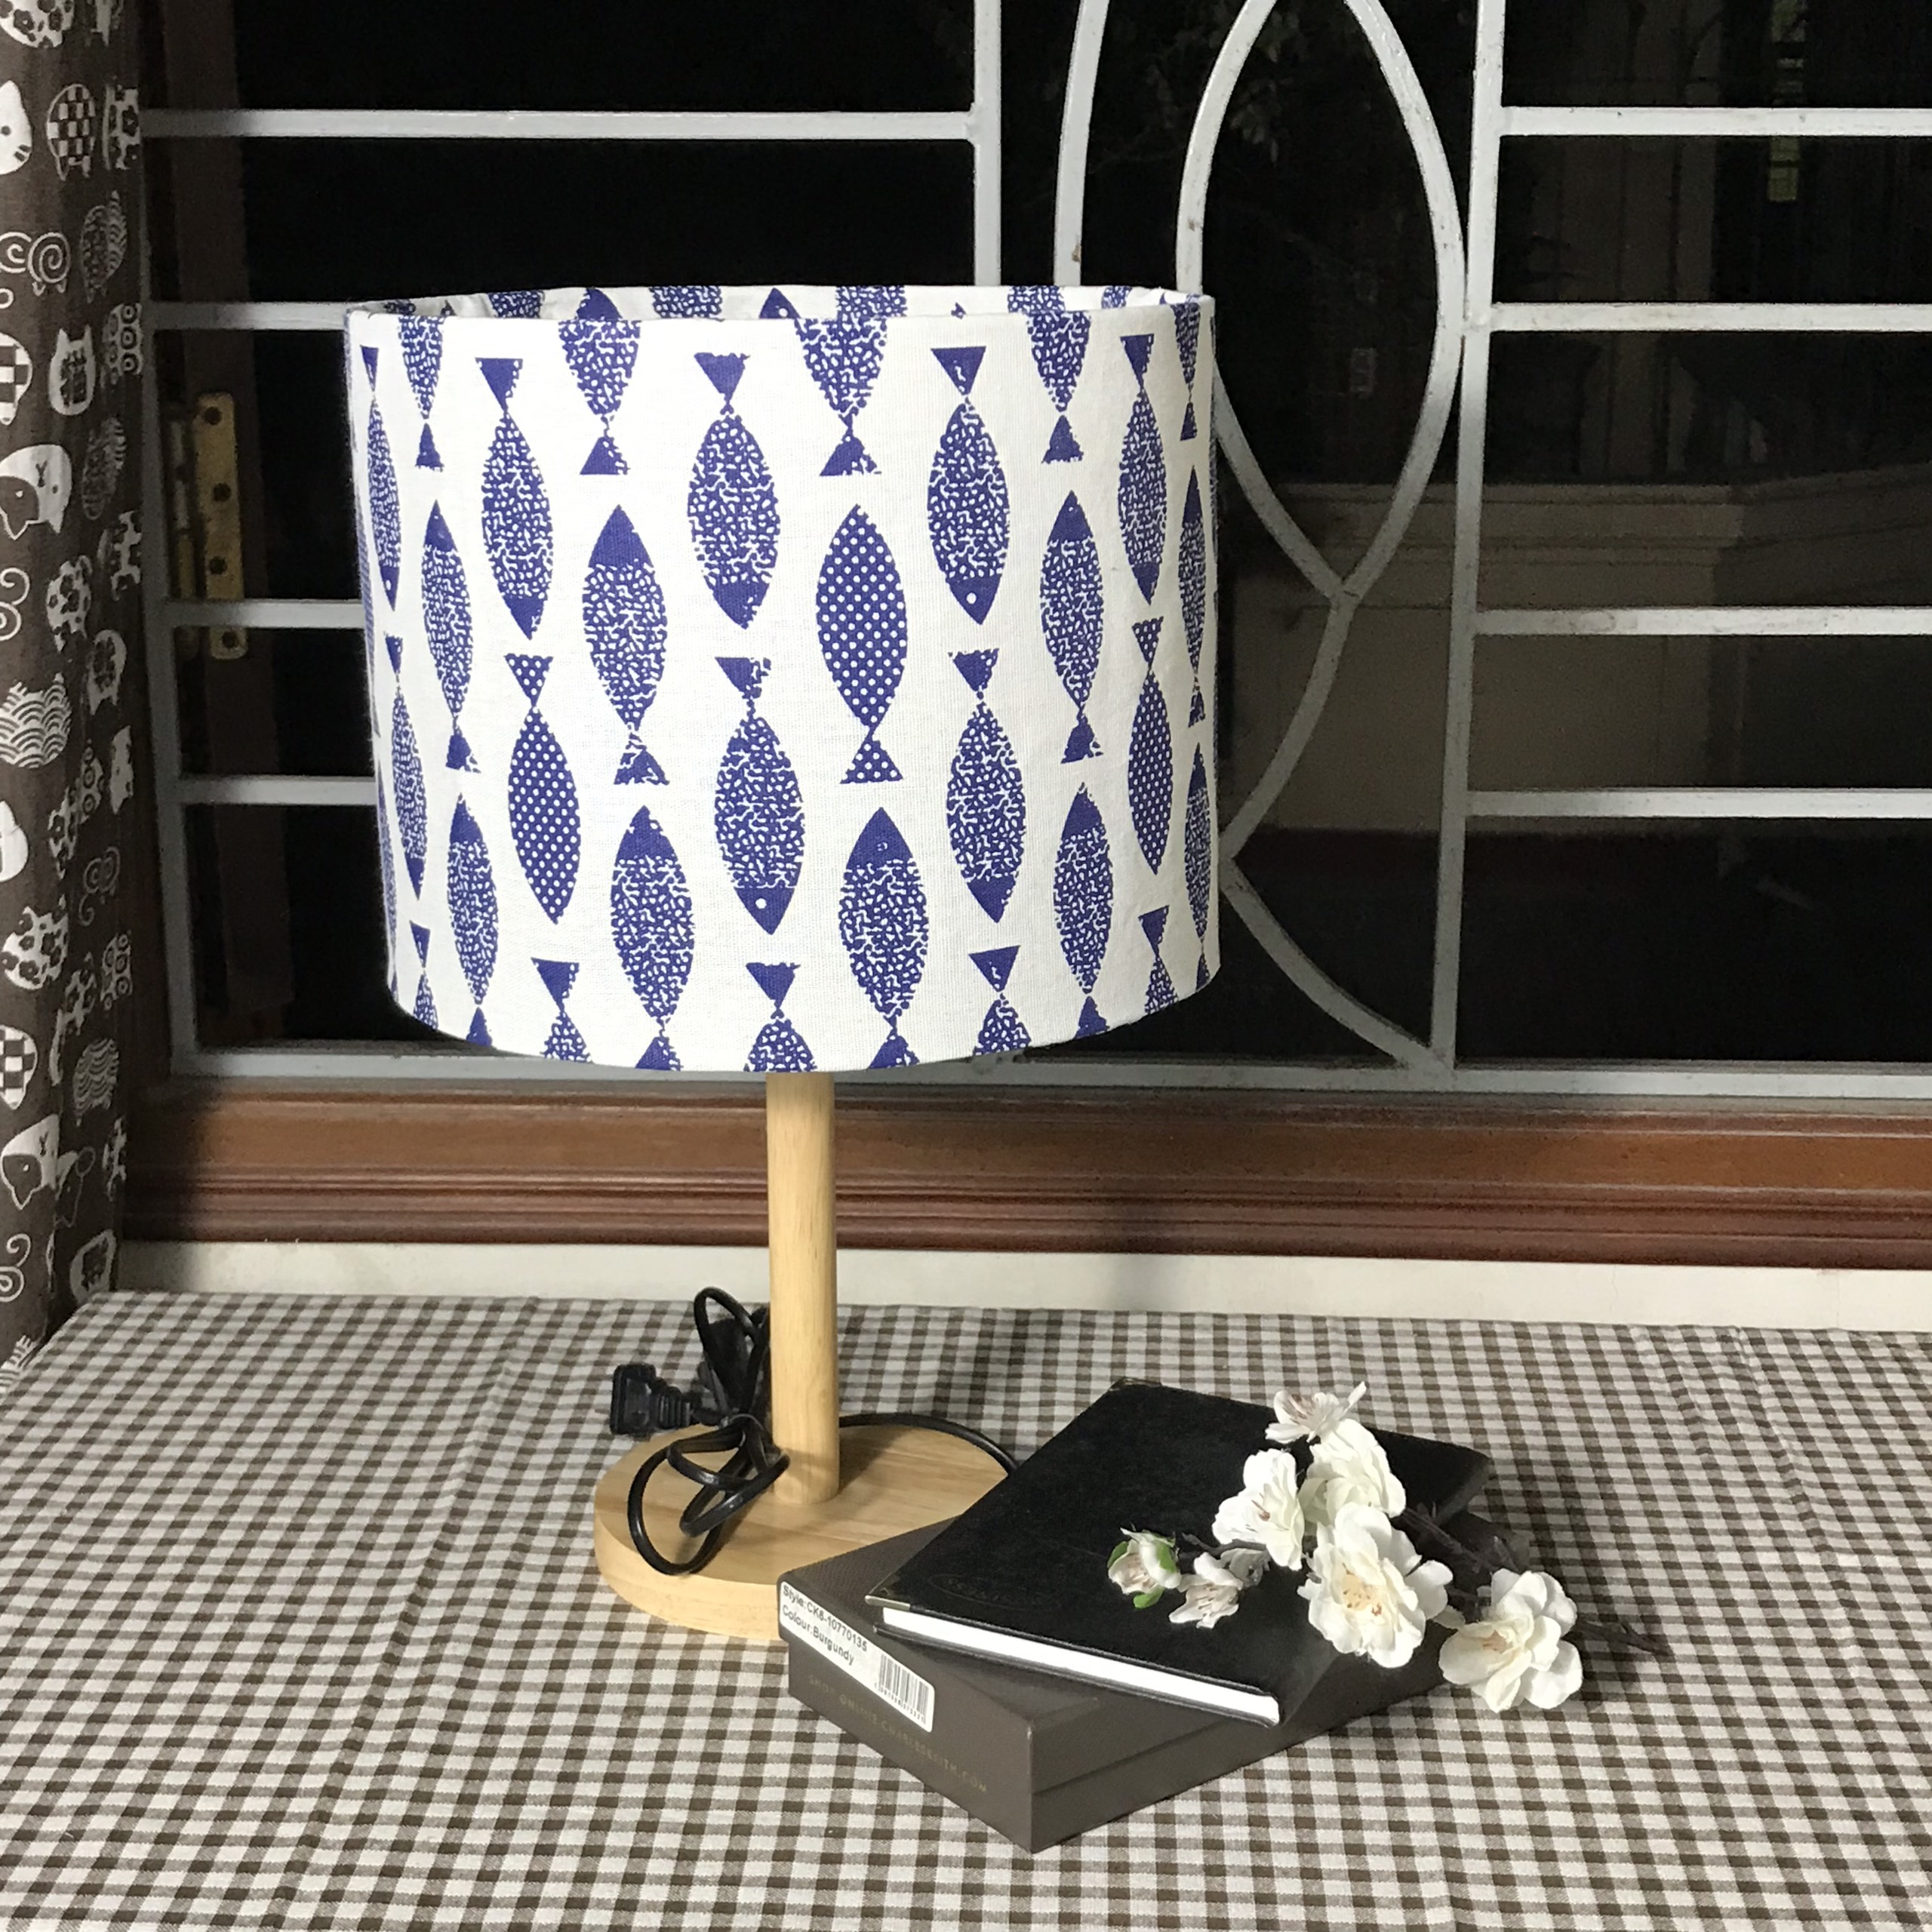 Đèn ngủ DB-A01 CÁ NHẬT BẢN - đèn ngủ để bàn chân gỗ phong cách Nhật Bản, chao vải canvas hiện đại, công tắc bật tắt, kèm đèn